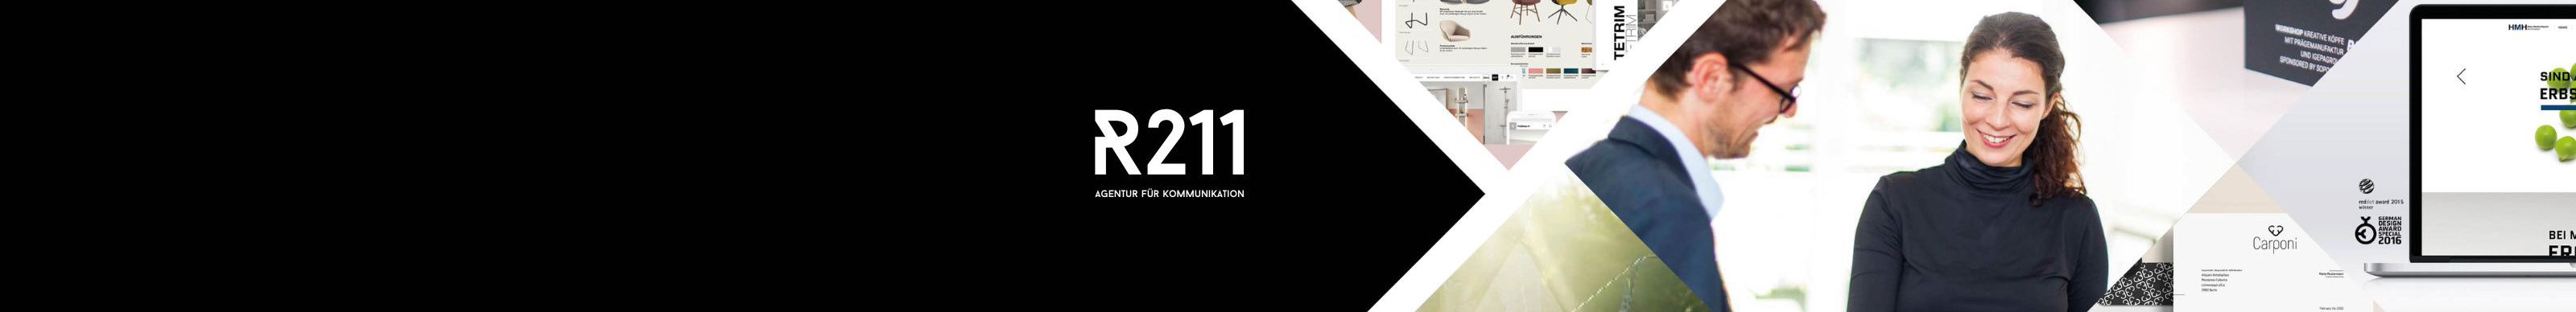 R211 – Agentur für Kommunikation's profile banner